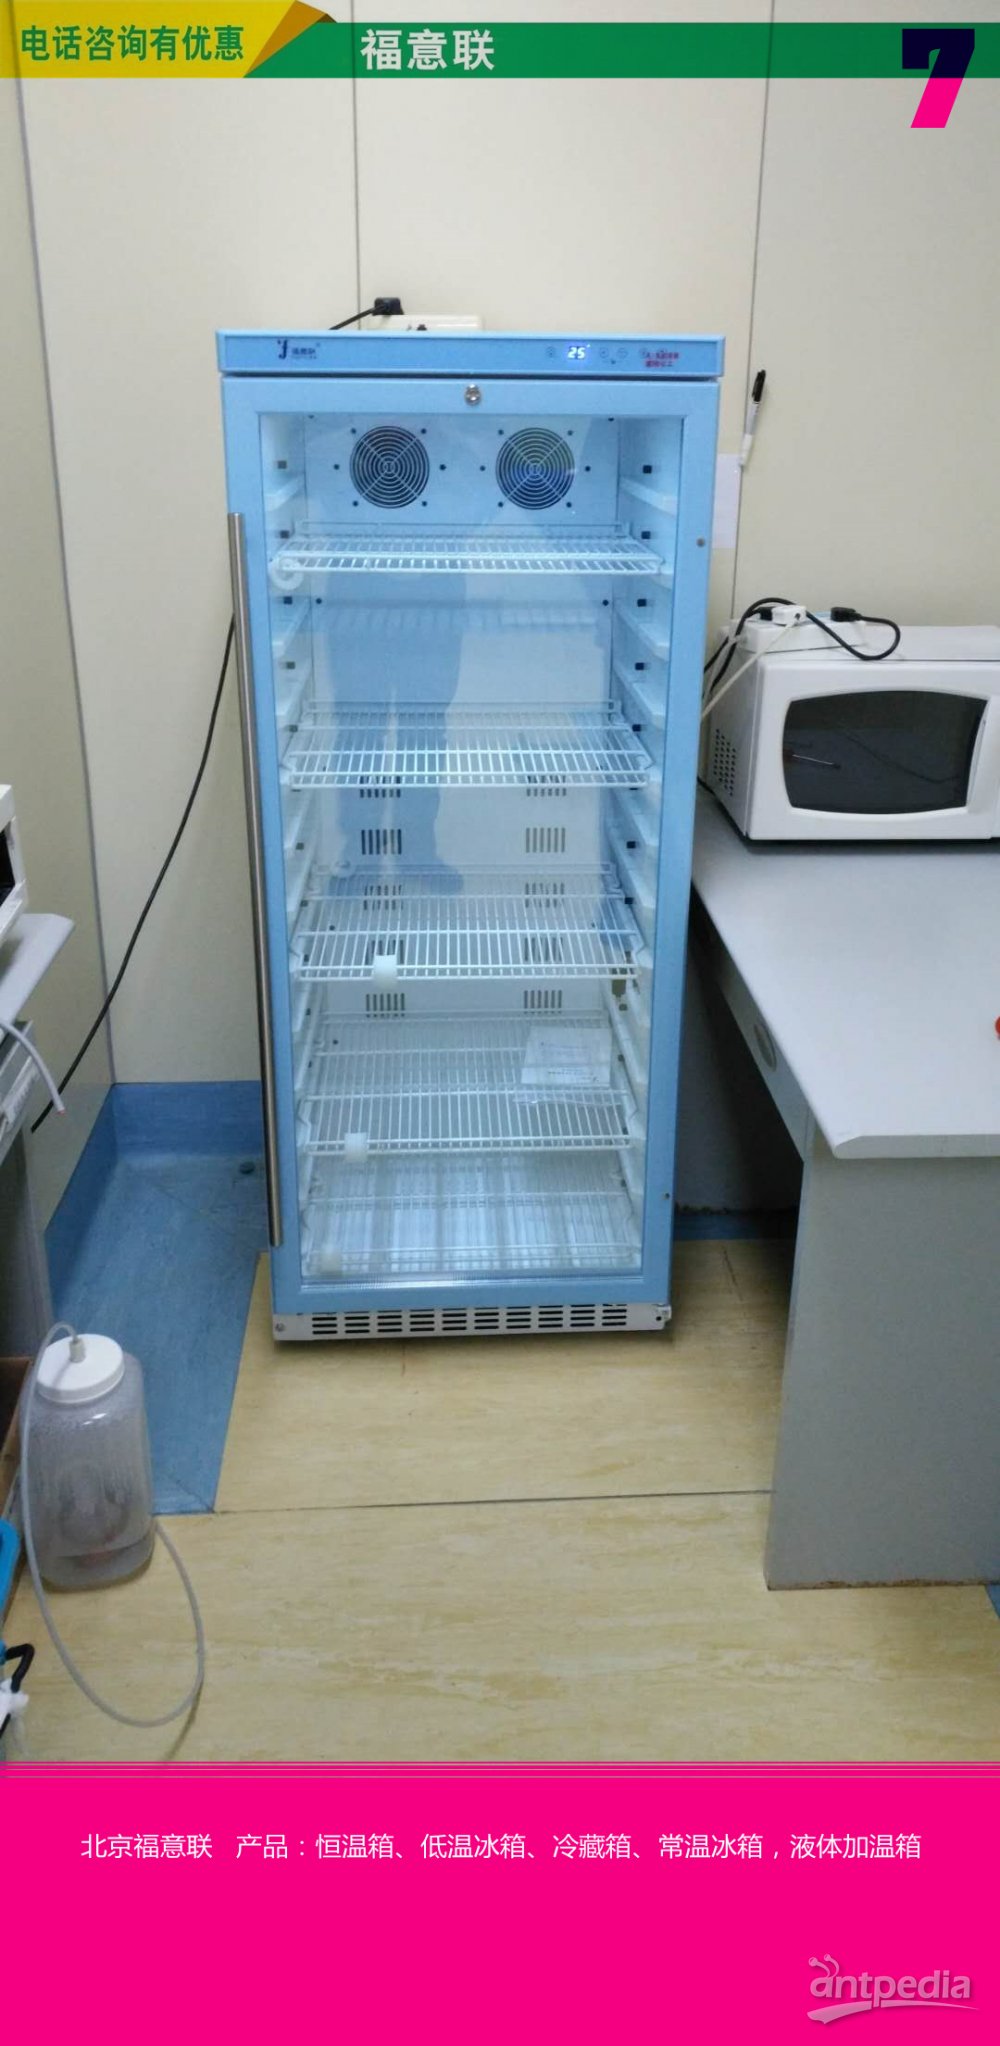 4℃生物样品保存箱带风道FYL-YS-1028LD